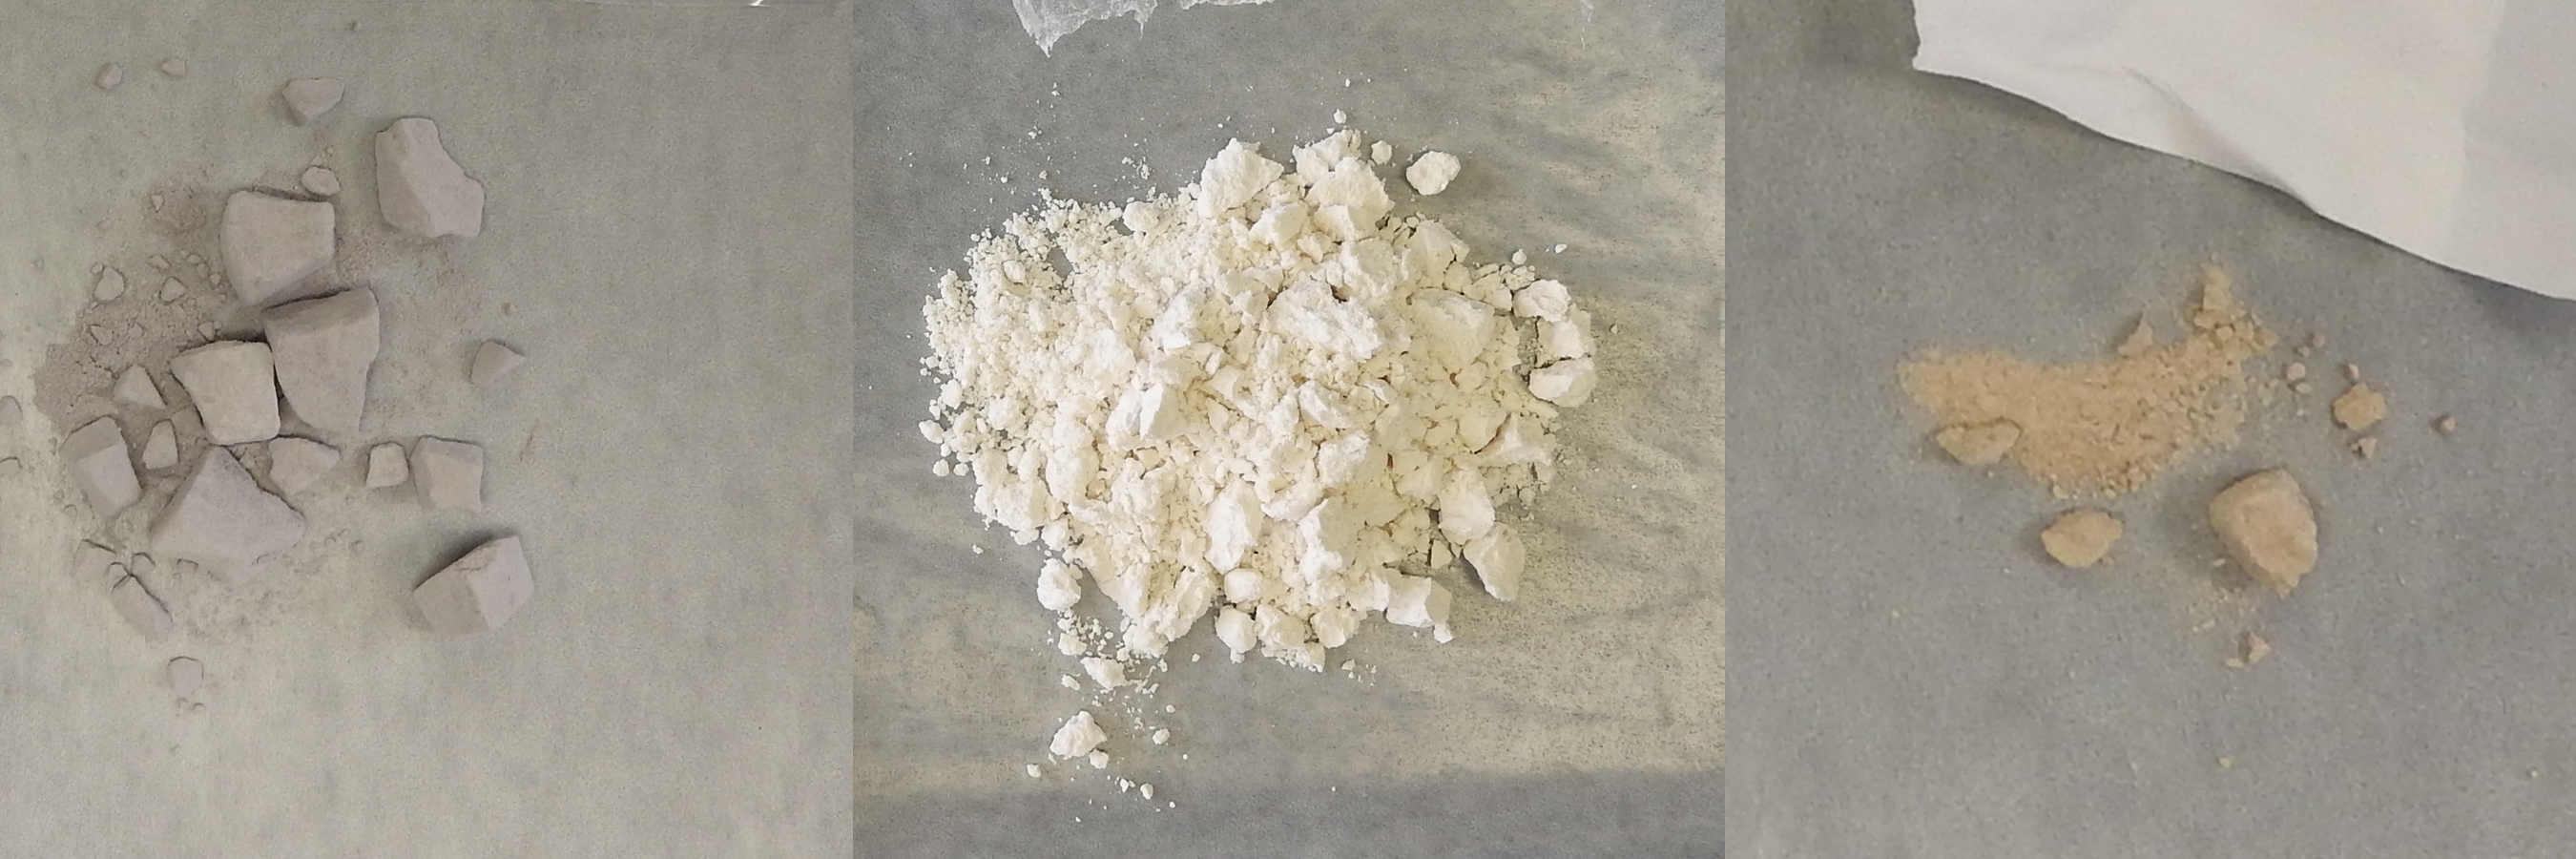 Powder Carfentanil